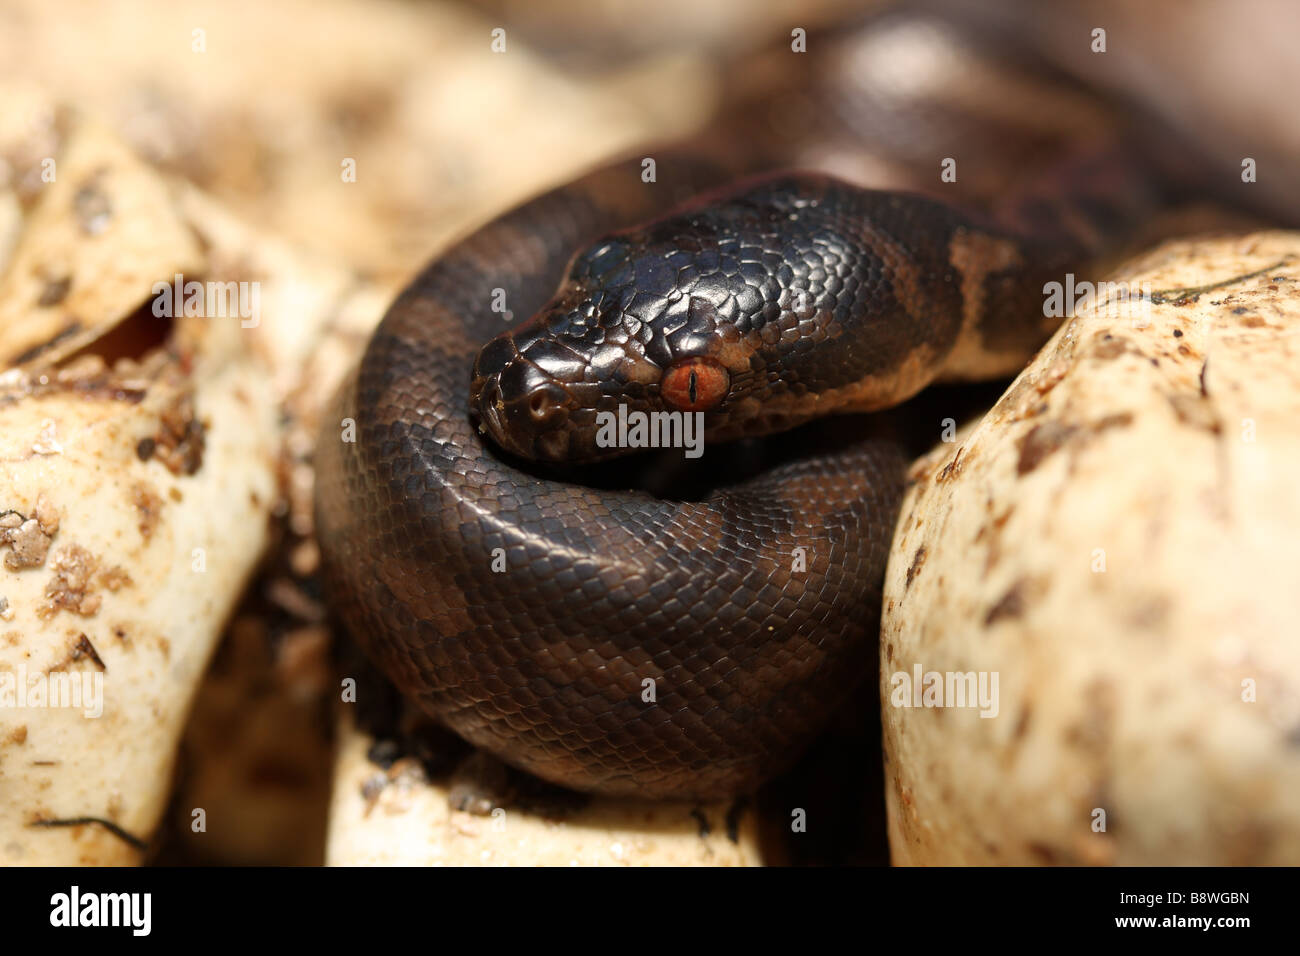 A hatchling Carpet Python (Morelia spilota mcdowlii) Stock Photo